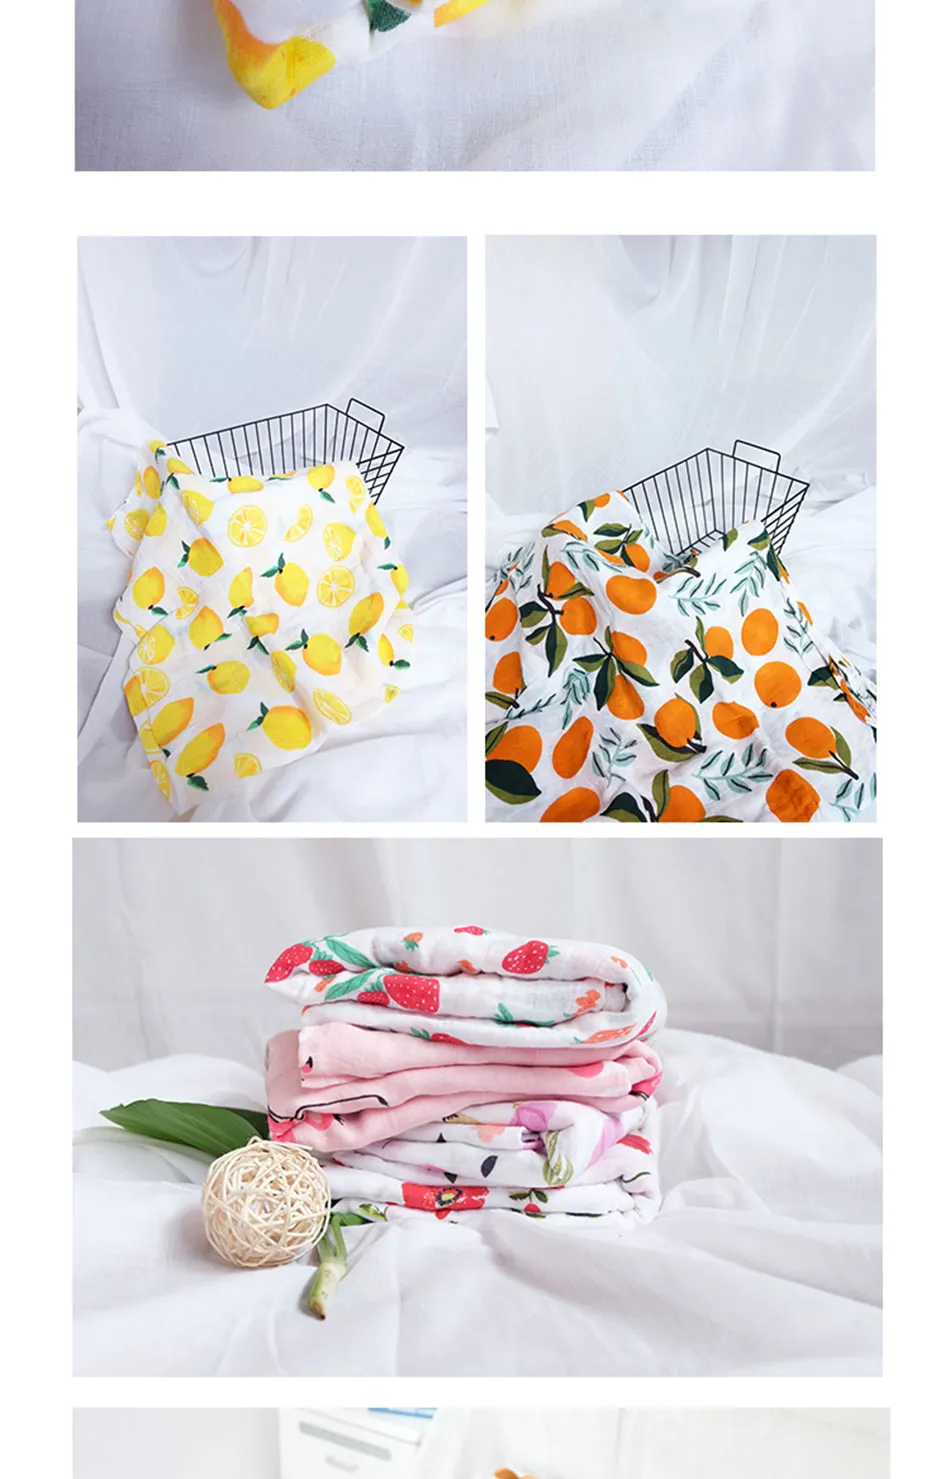 Одеяло из муслина с надписью Happy Flute s, мягкое одеяло из хлопка для новорожденных, детское одеяло